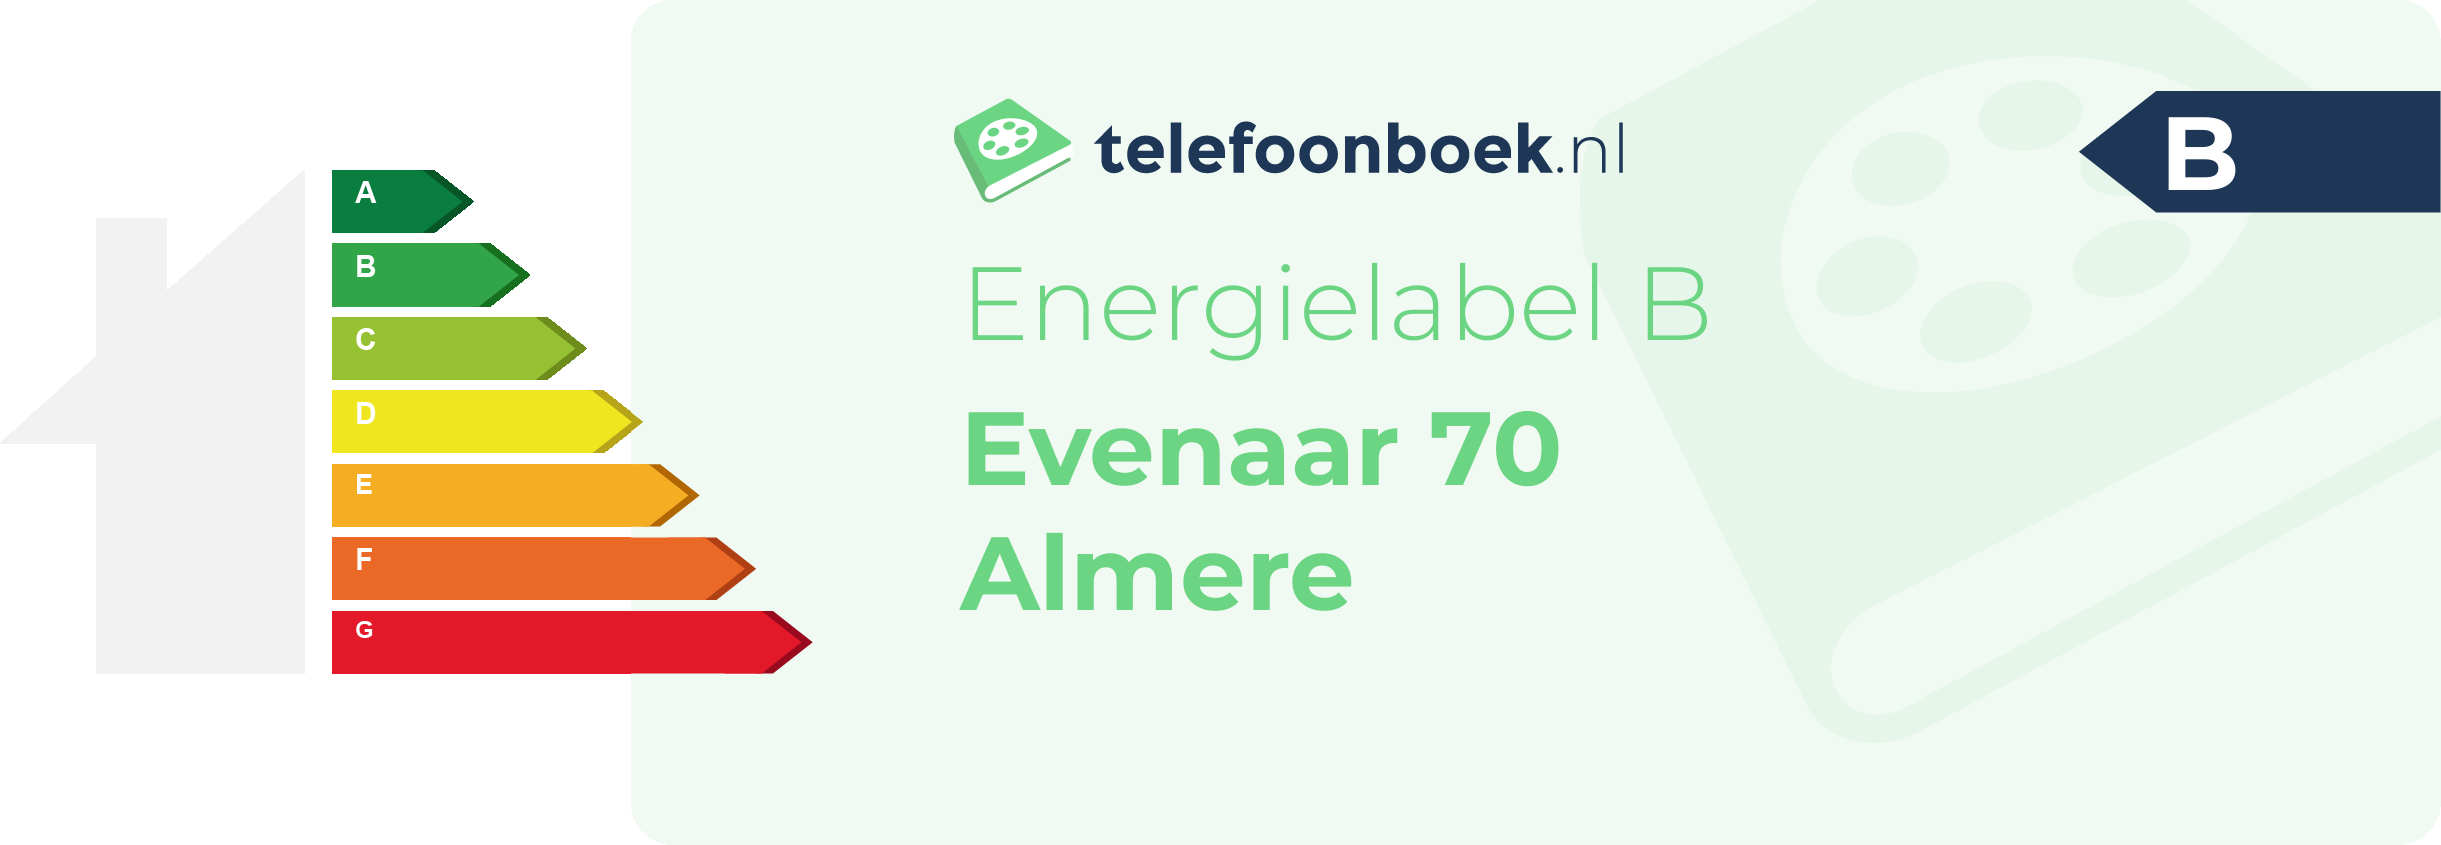 Energielabel Evenaar 70 Almere